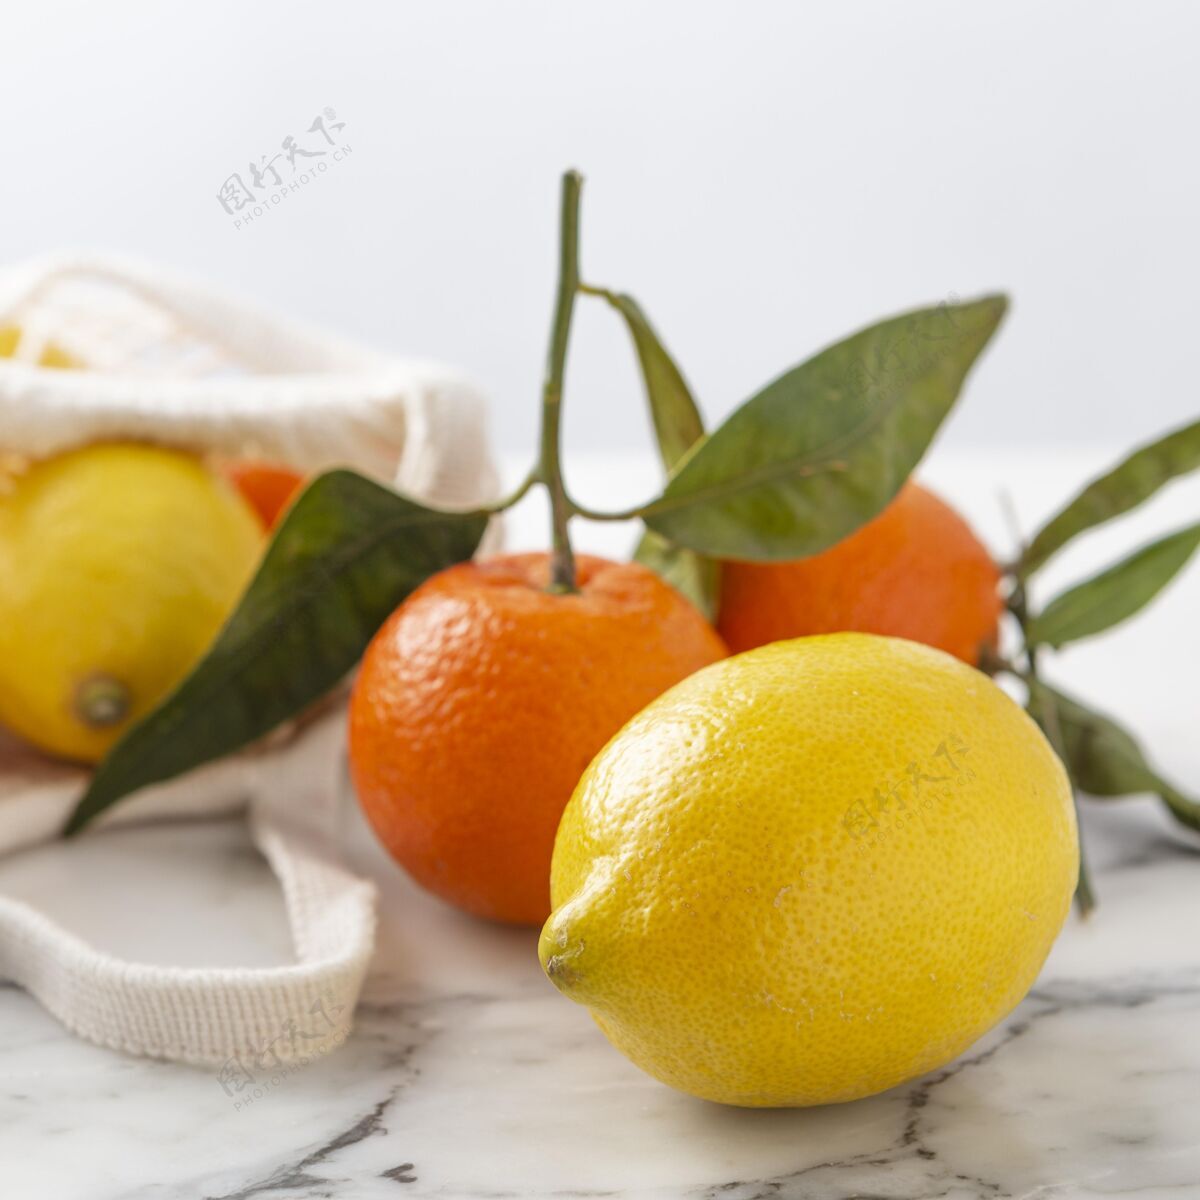 再利用桌上有柠檬和柑橘柠檬生态水果